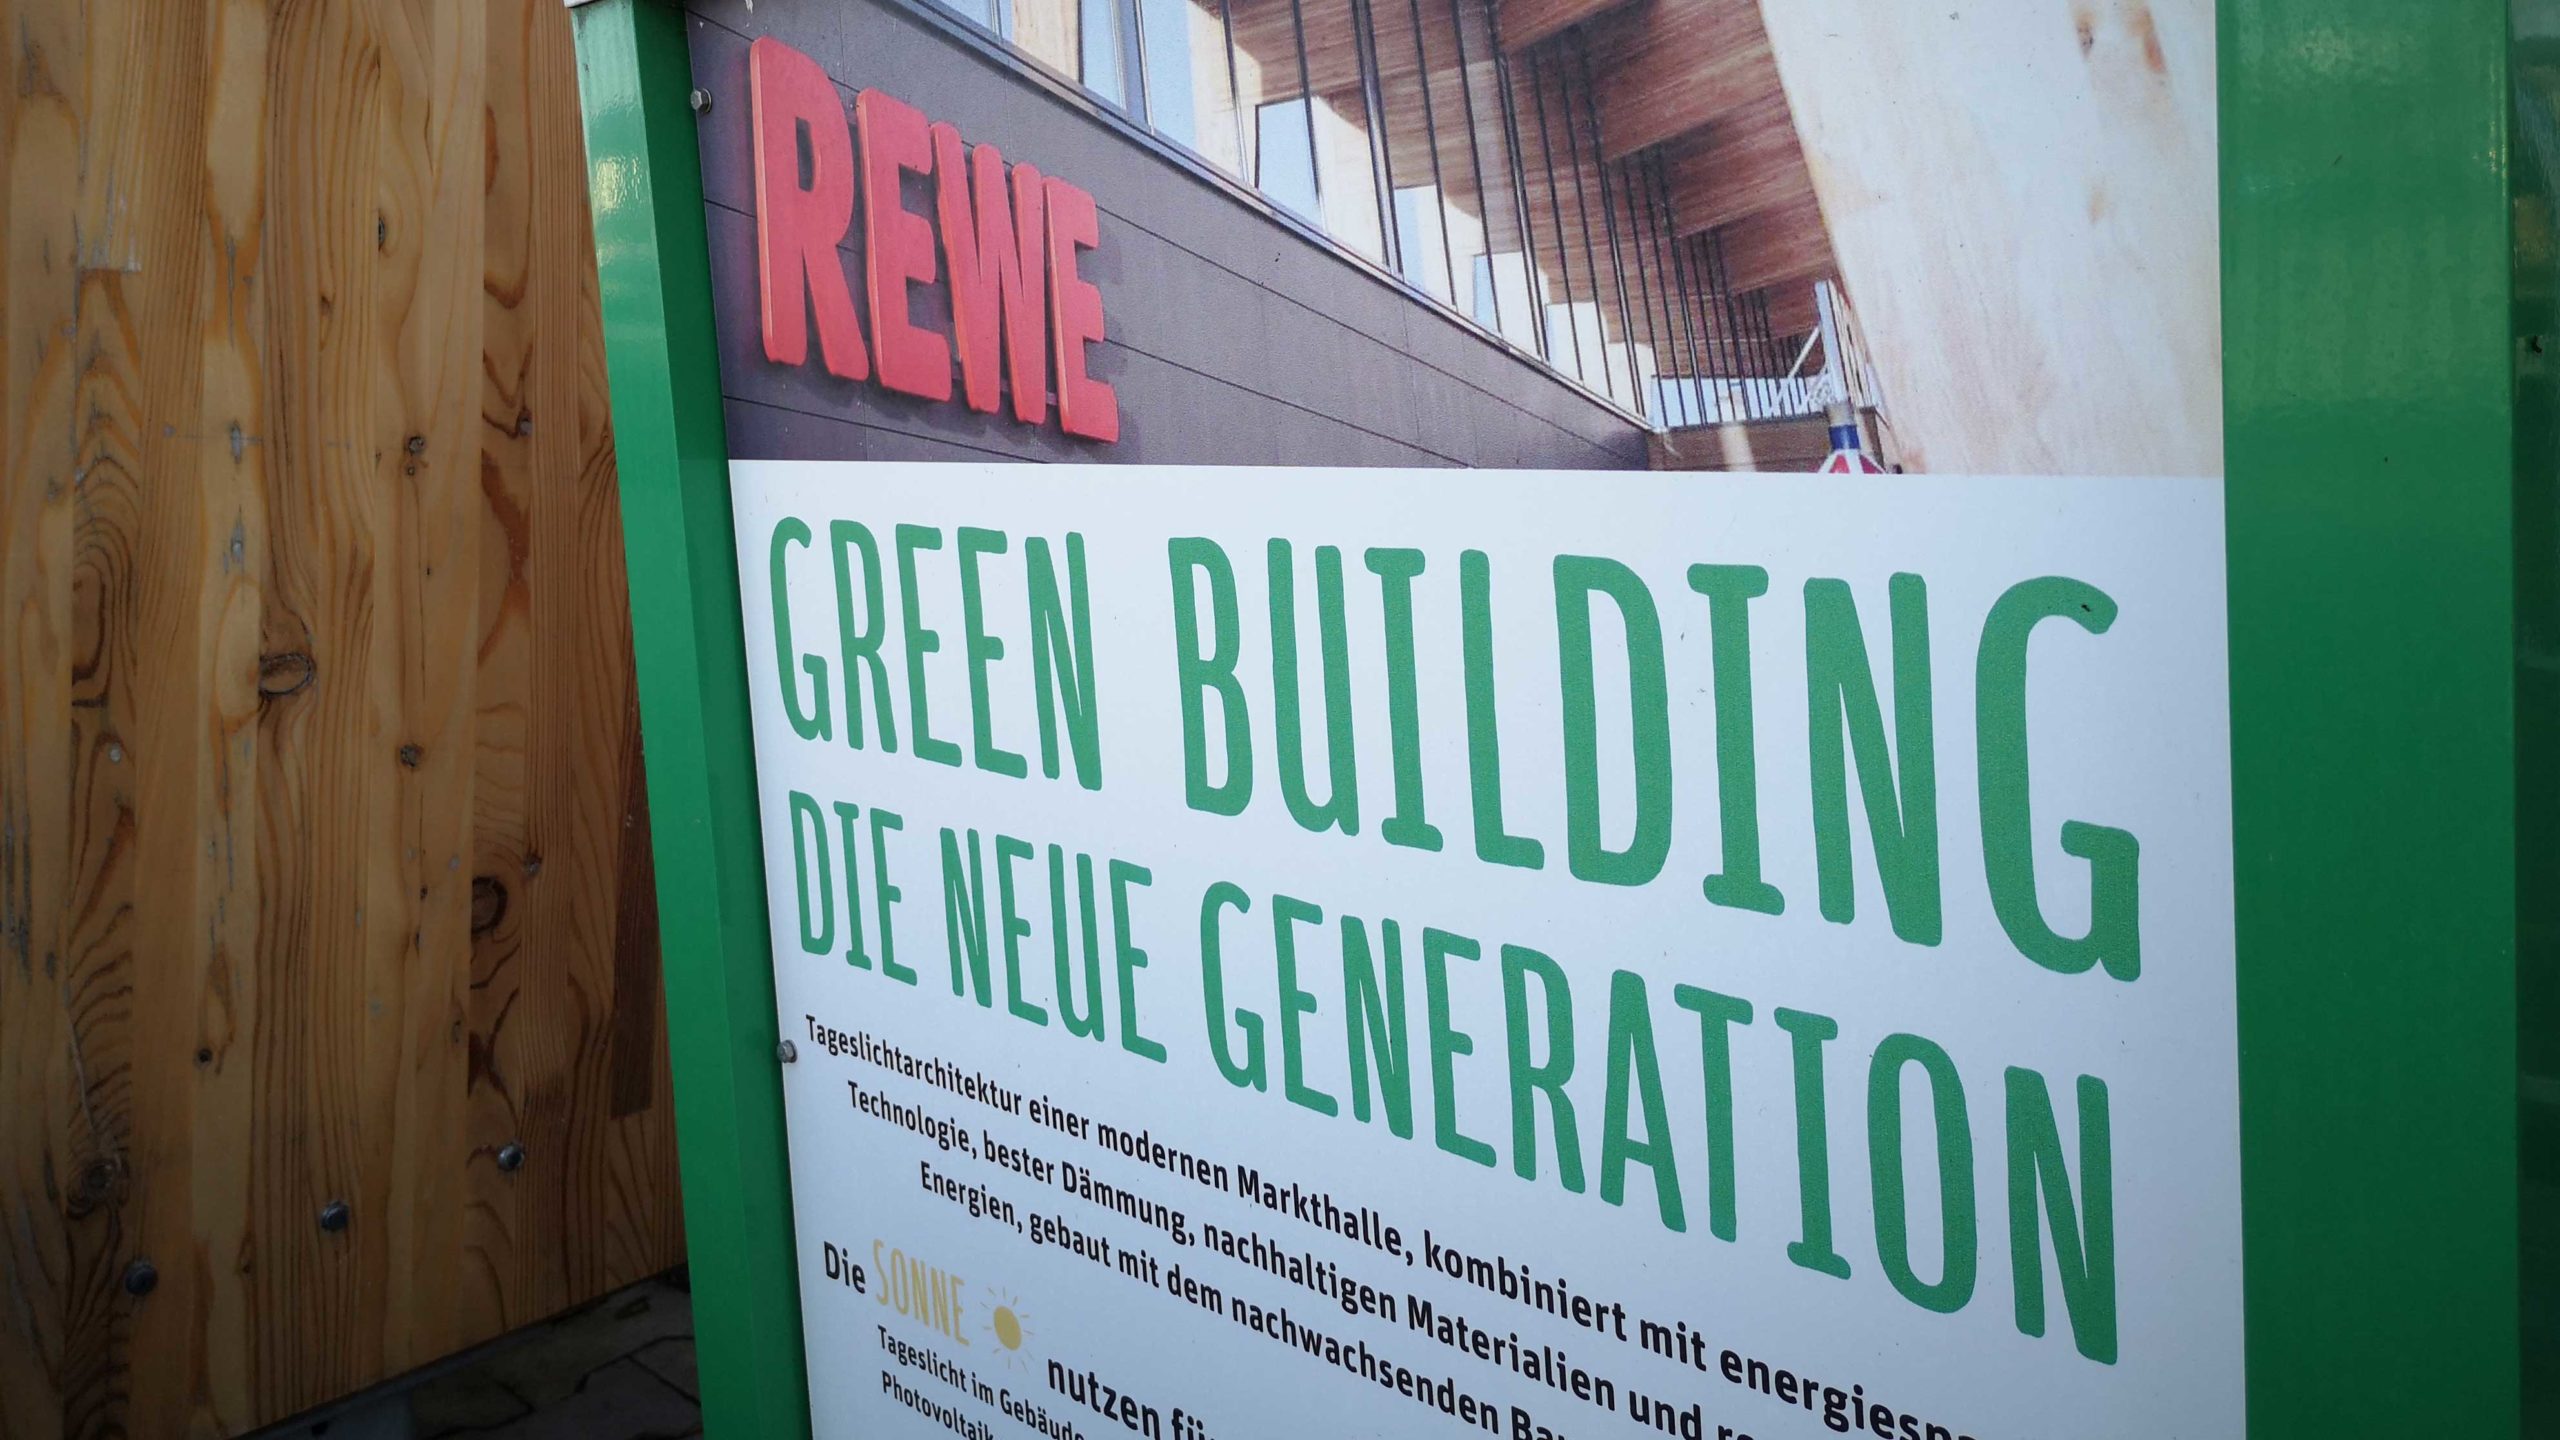 REWE eröffnet grünen Supermarkt der Zukunft mit Dachfarm und viel Holz